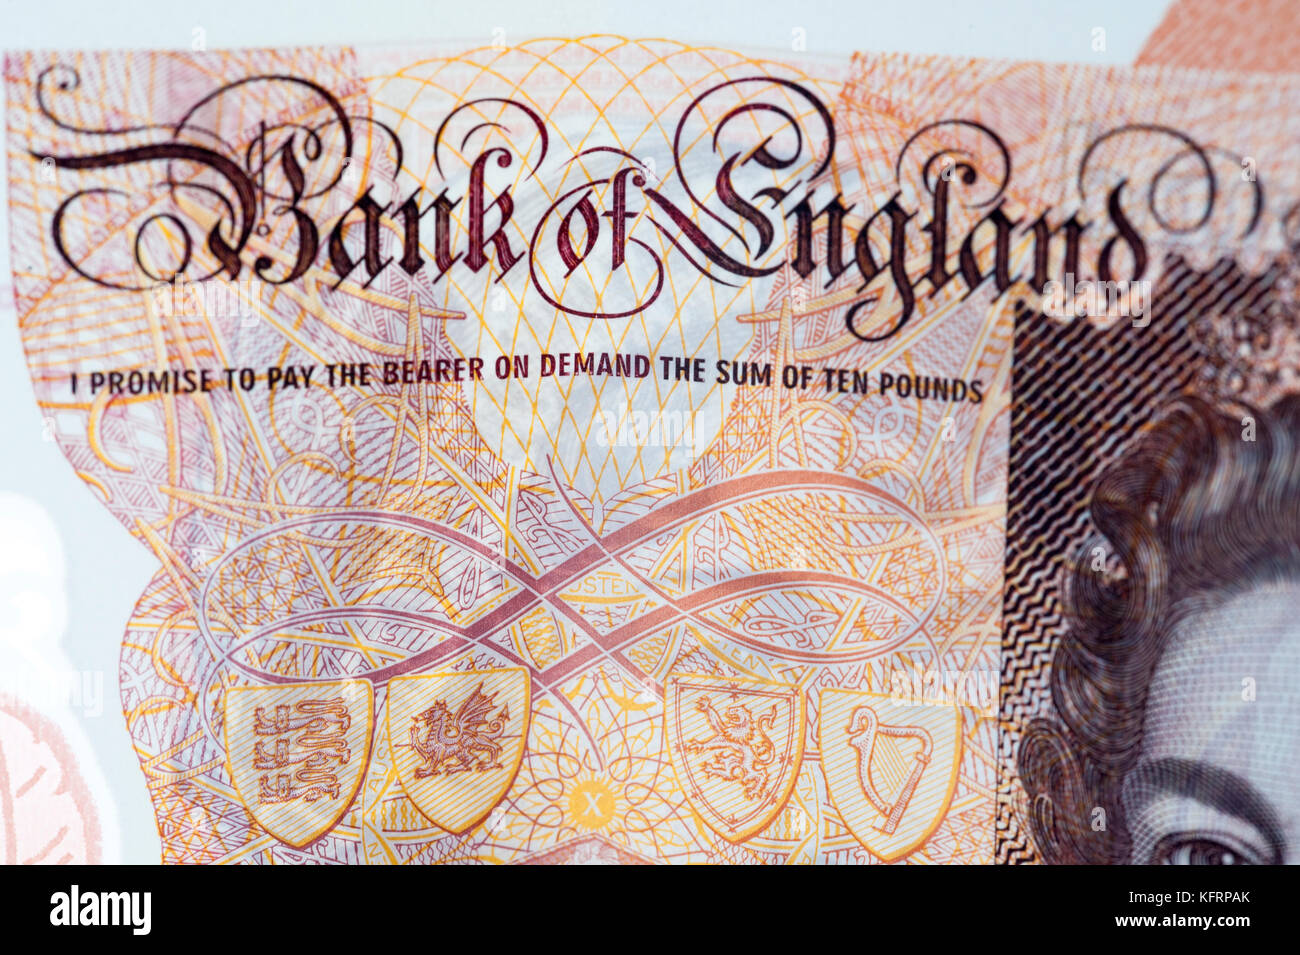 London, England - Oktober, 24: Detailansicht der neue britische 10-lbs-Hinweis, mit einem Porträt von Jane Austen. Stockfoto